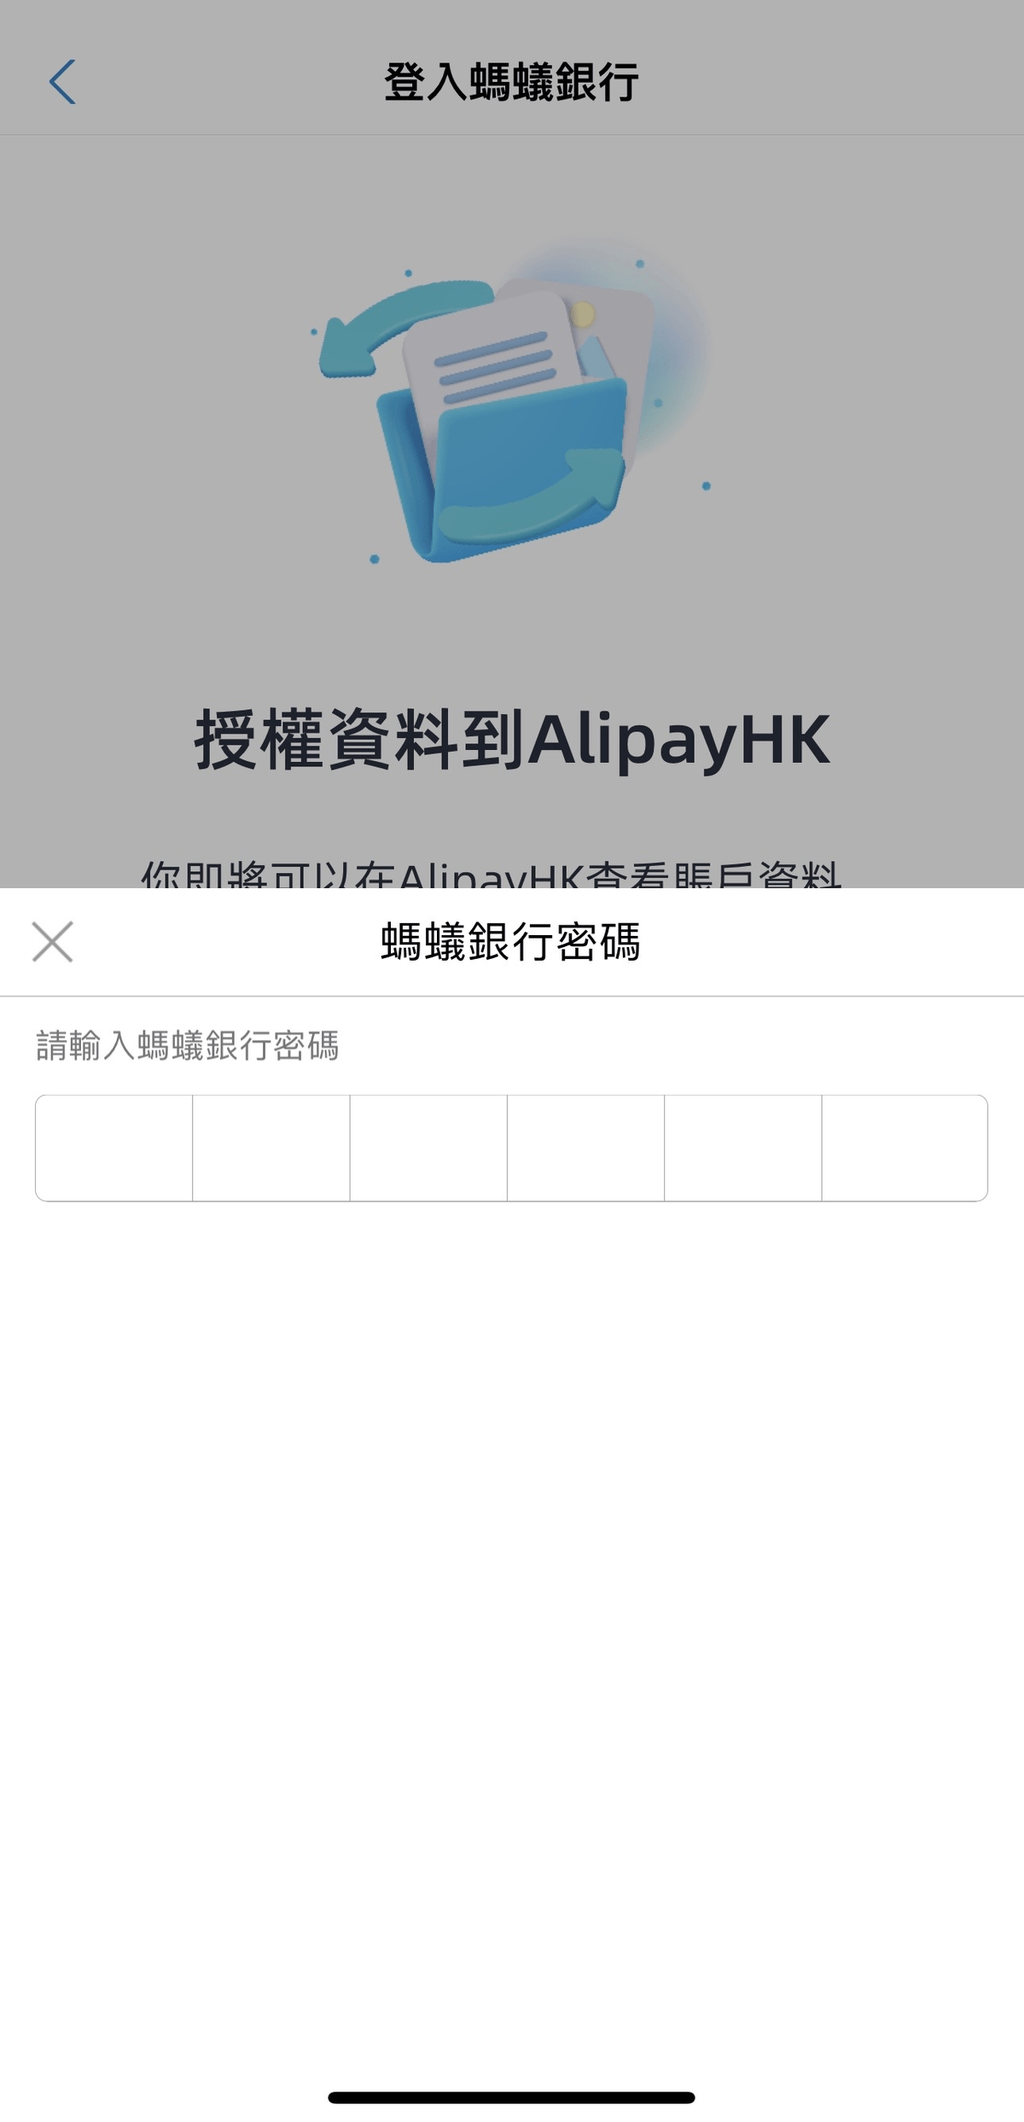 5. 输入蚂蚁银行密码登入银行，并允许授权资料到 AlipayHK；